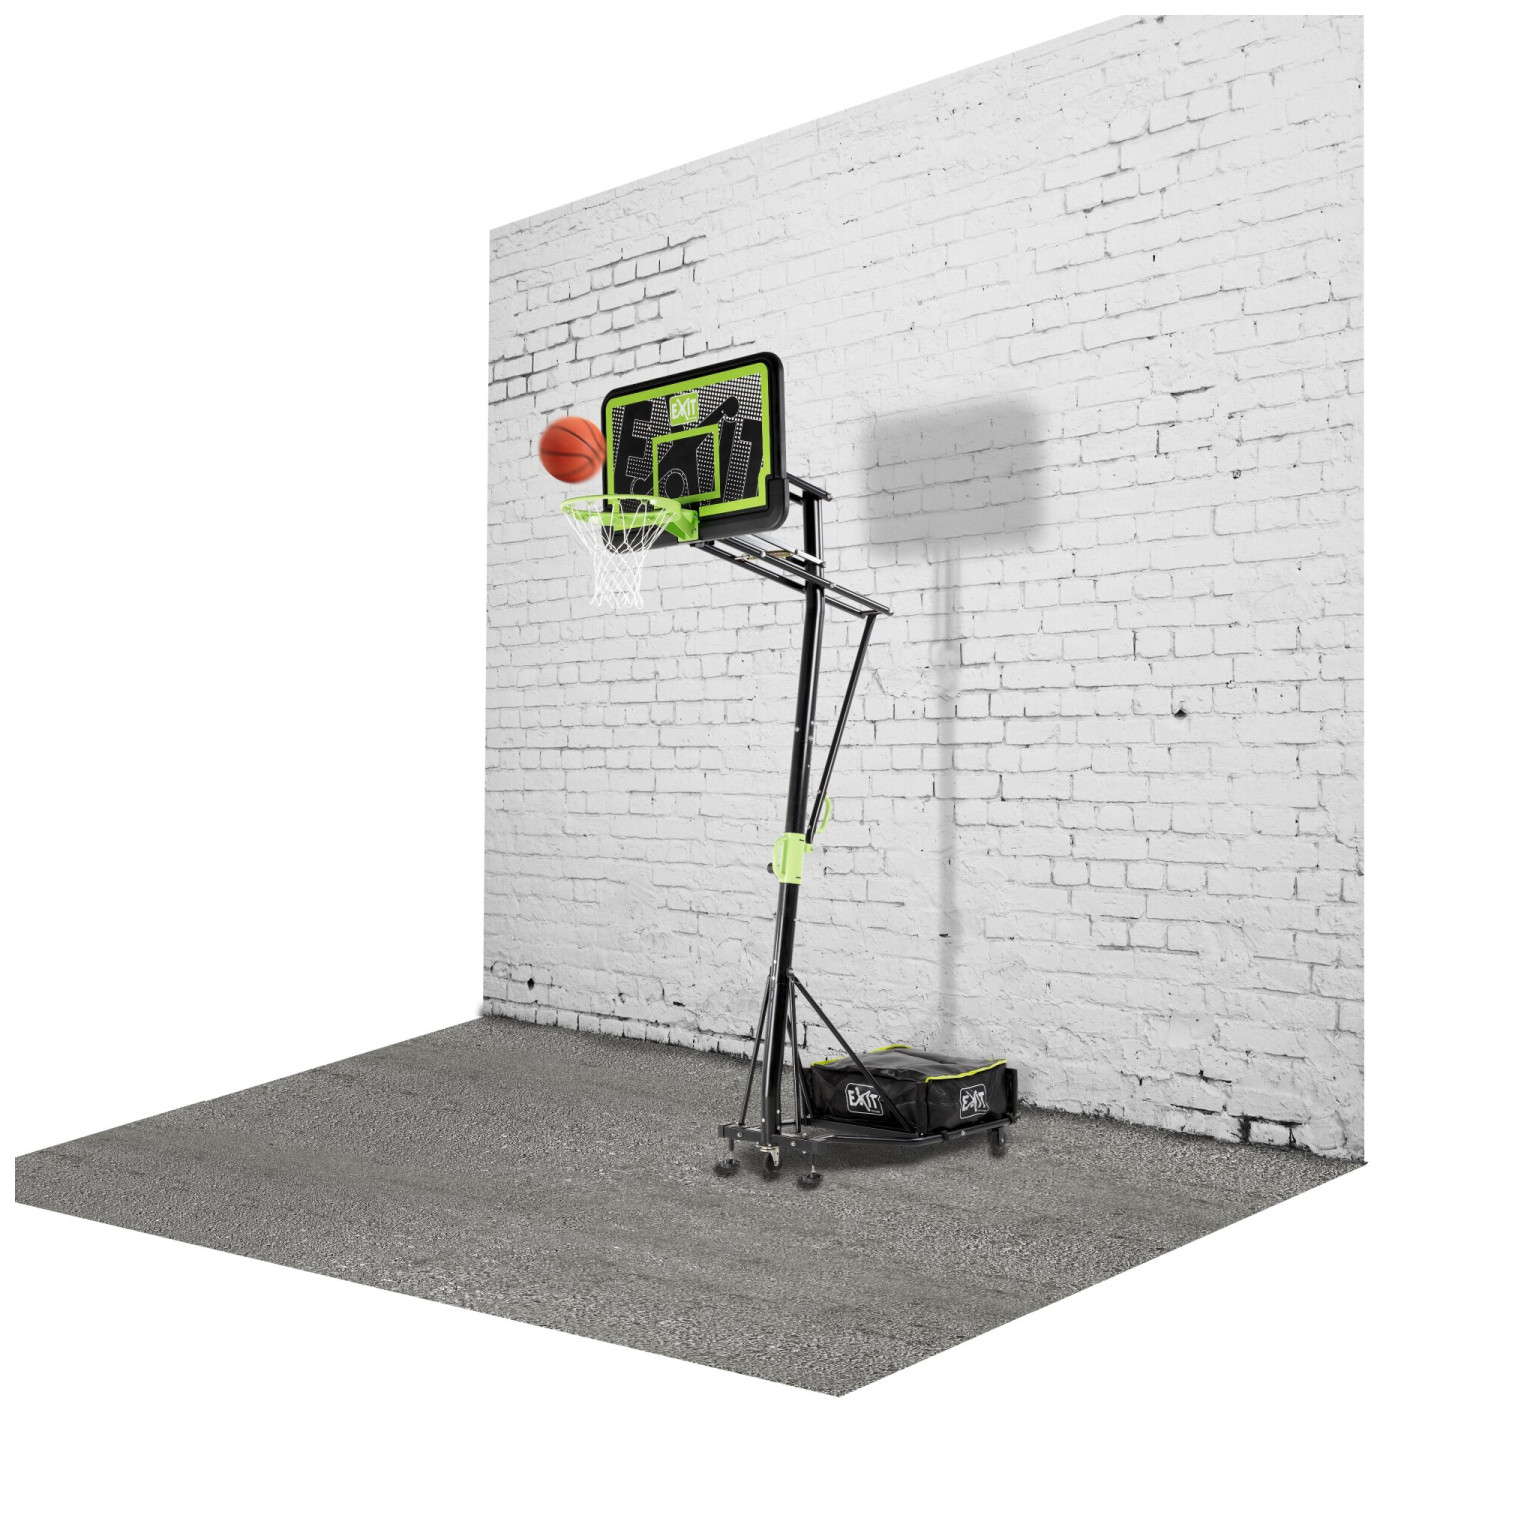 EXIT Galaxy verplaatsbaar basketbalbord op wielen - black ed